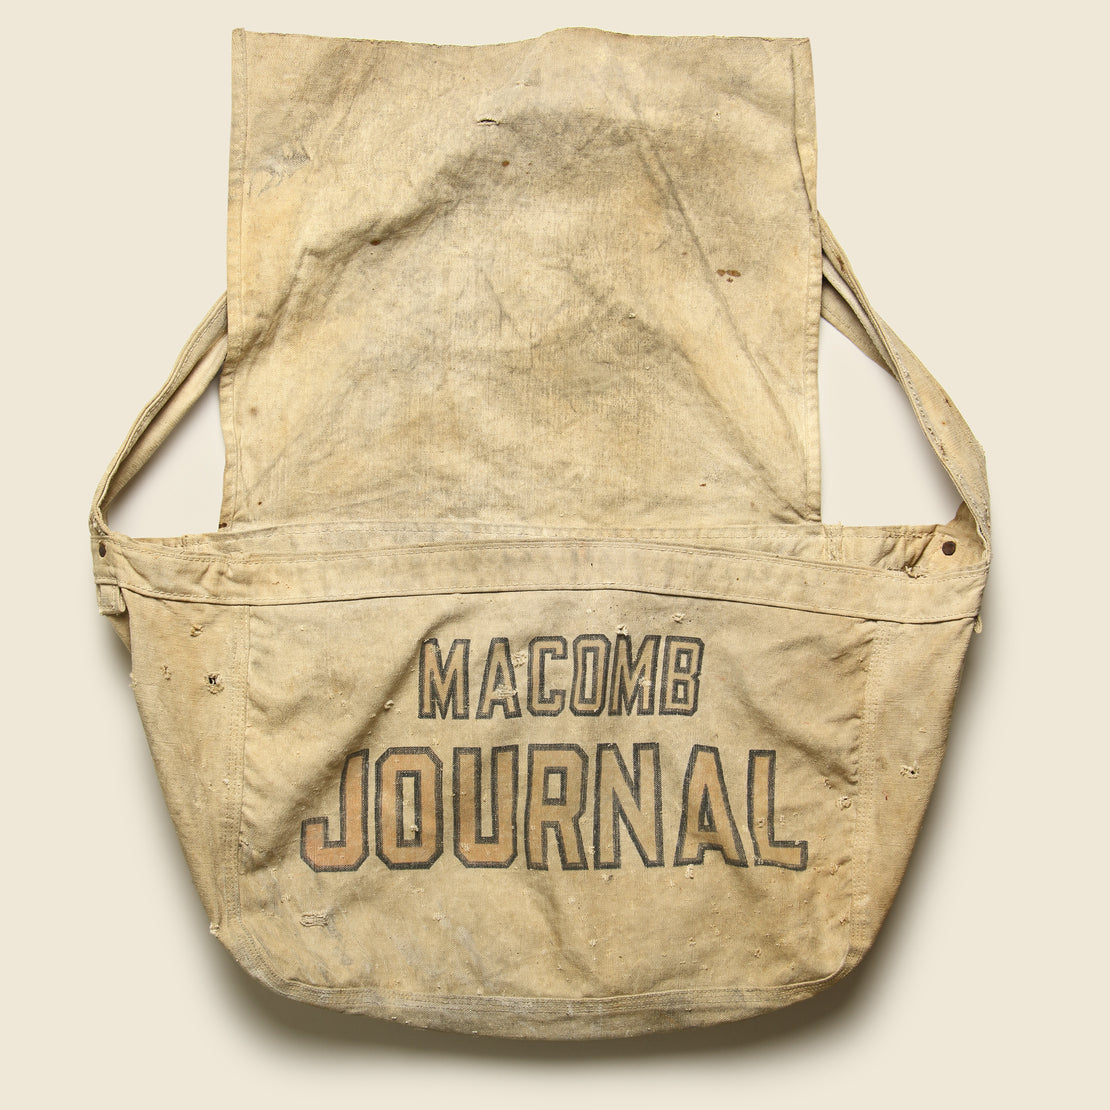 Vintage Cotton Messenger Bag - Macomb Journal